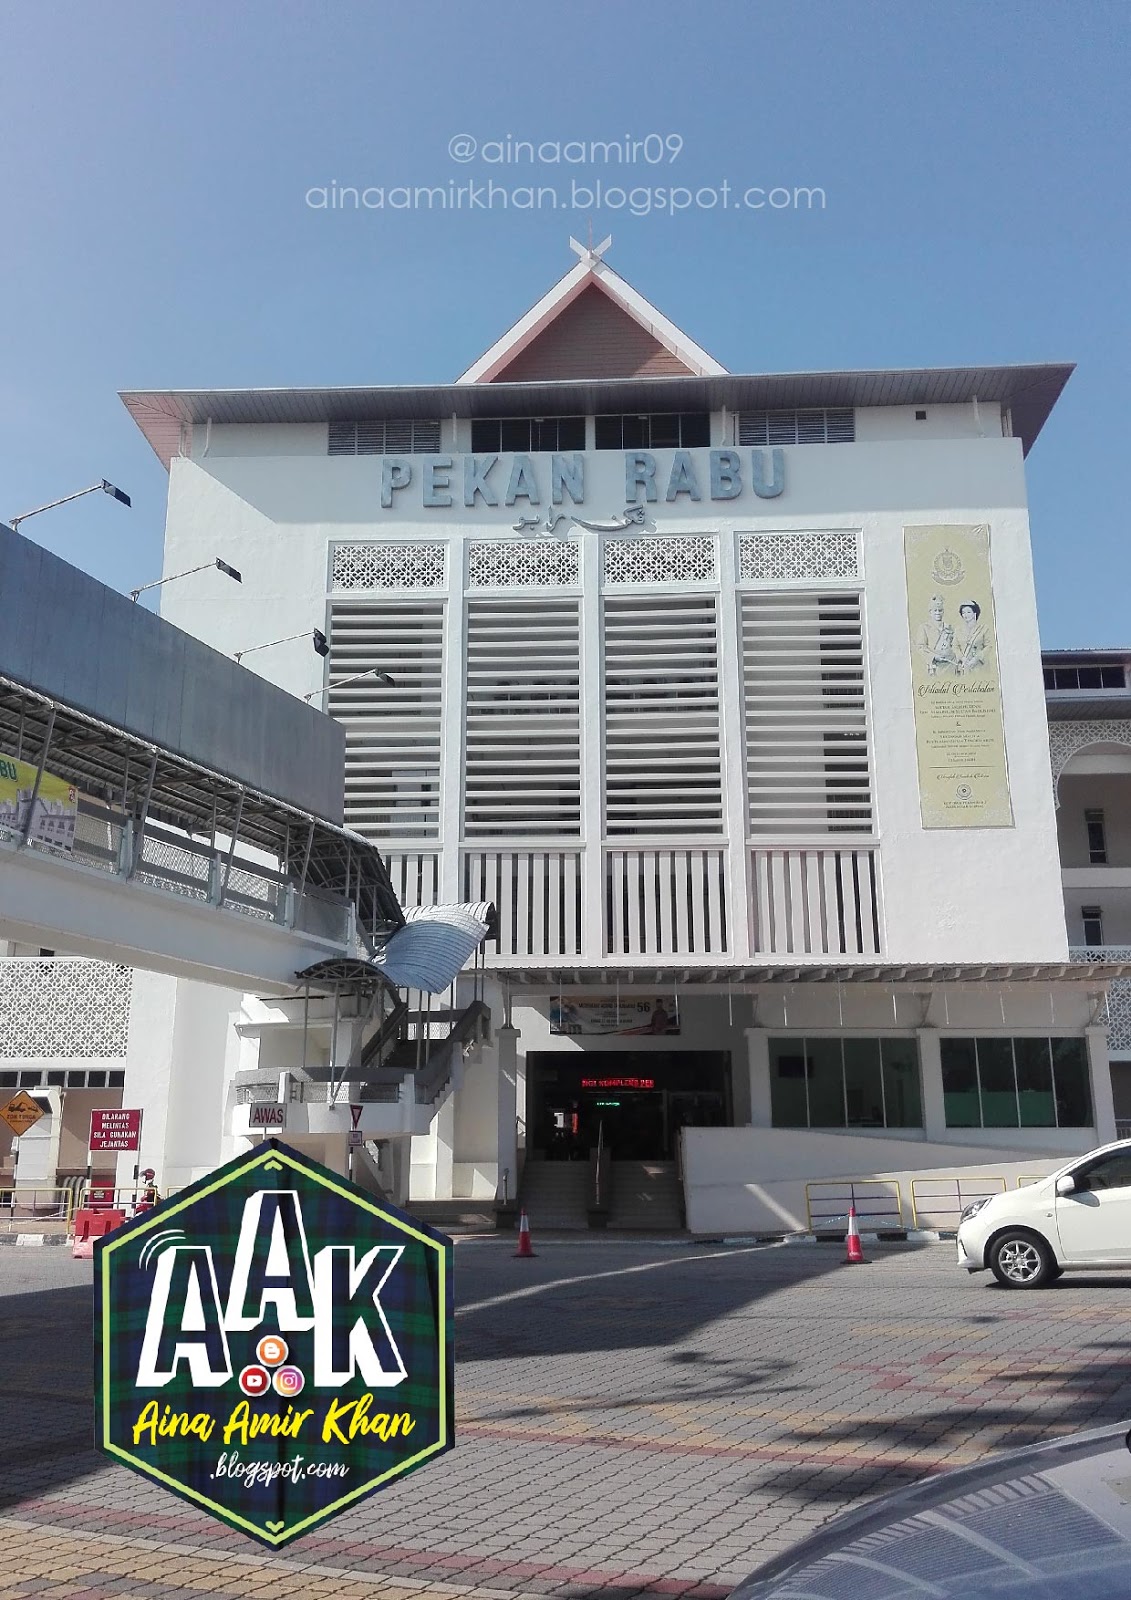 Aina Amir Khan: Pekan Rabu Alor Setar, Kedah best ke?